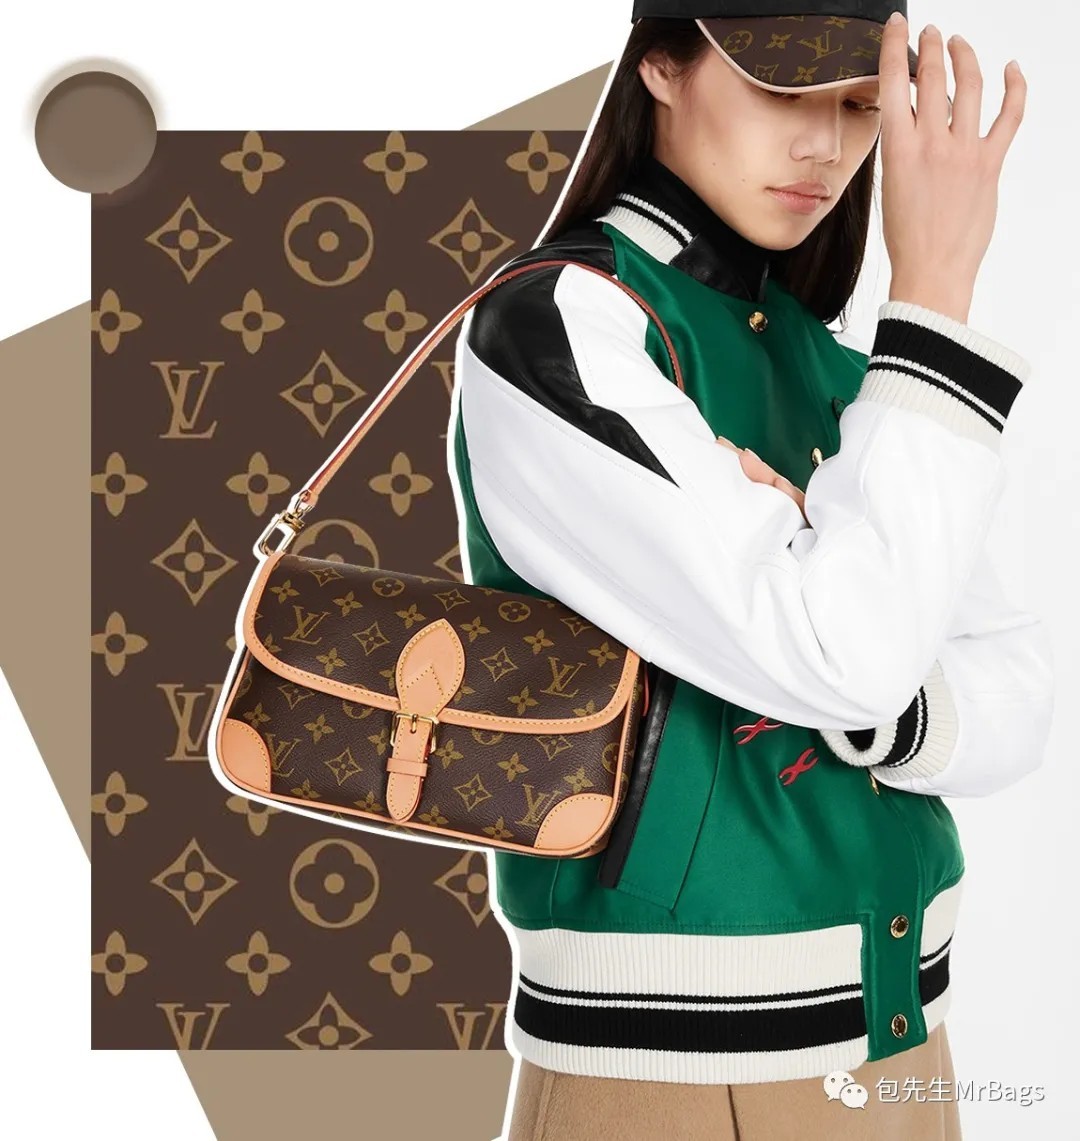 Топ 12, най-достойни за закупуване на висококачествени копия на дизайнерски чанти (актуализация за 2022 г.) - Най-добро качество на фалшива чанта Louis Vuitton Онлайн магазин, Реплика на дизайнерска чанта ru